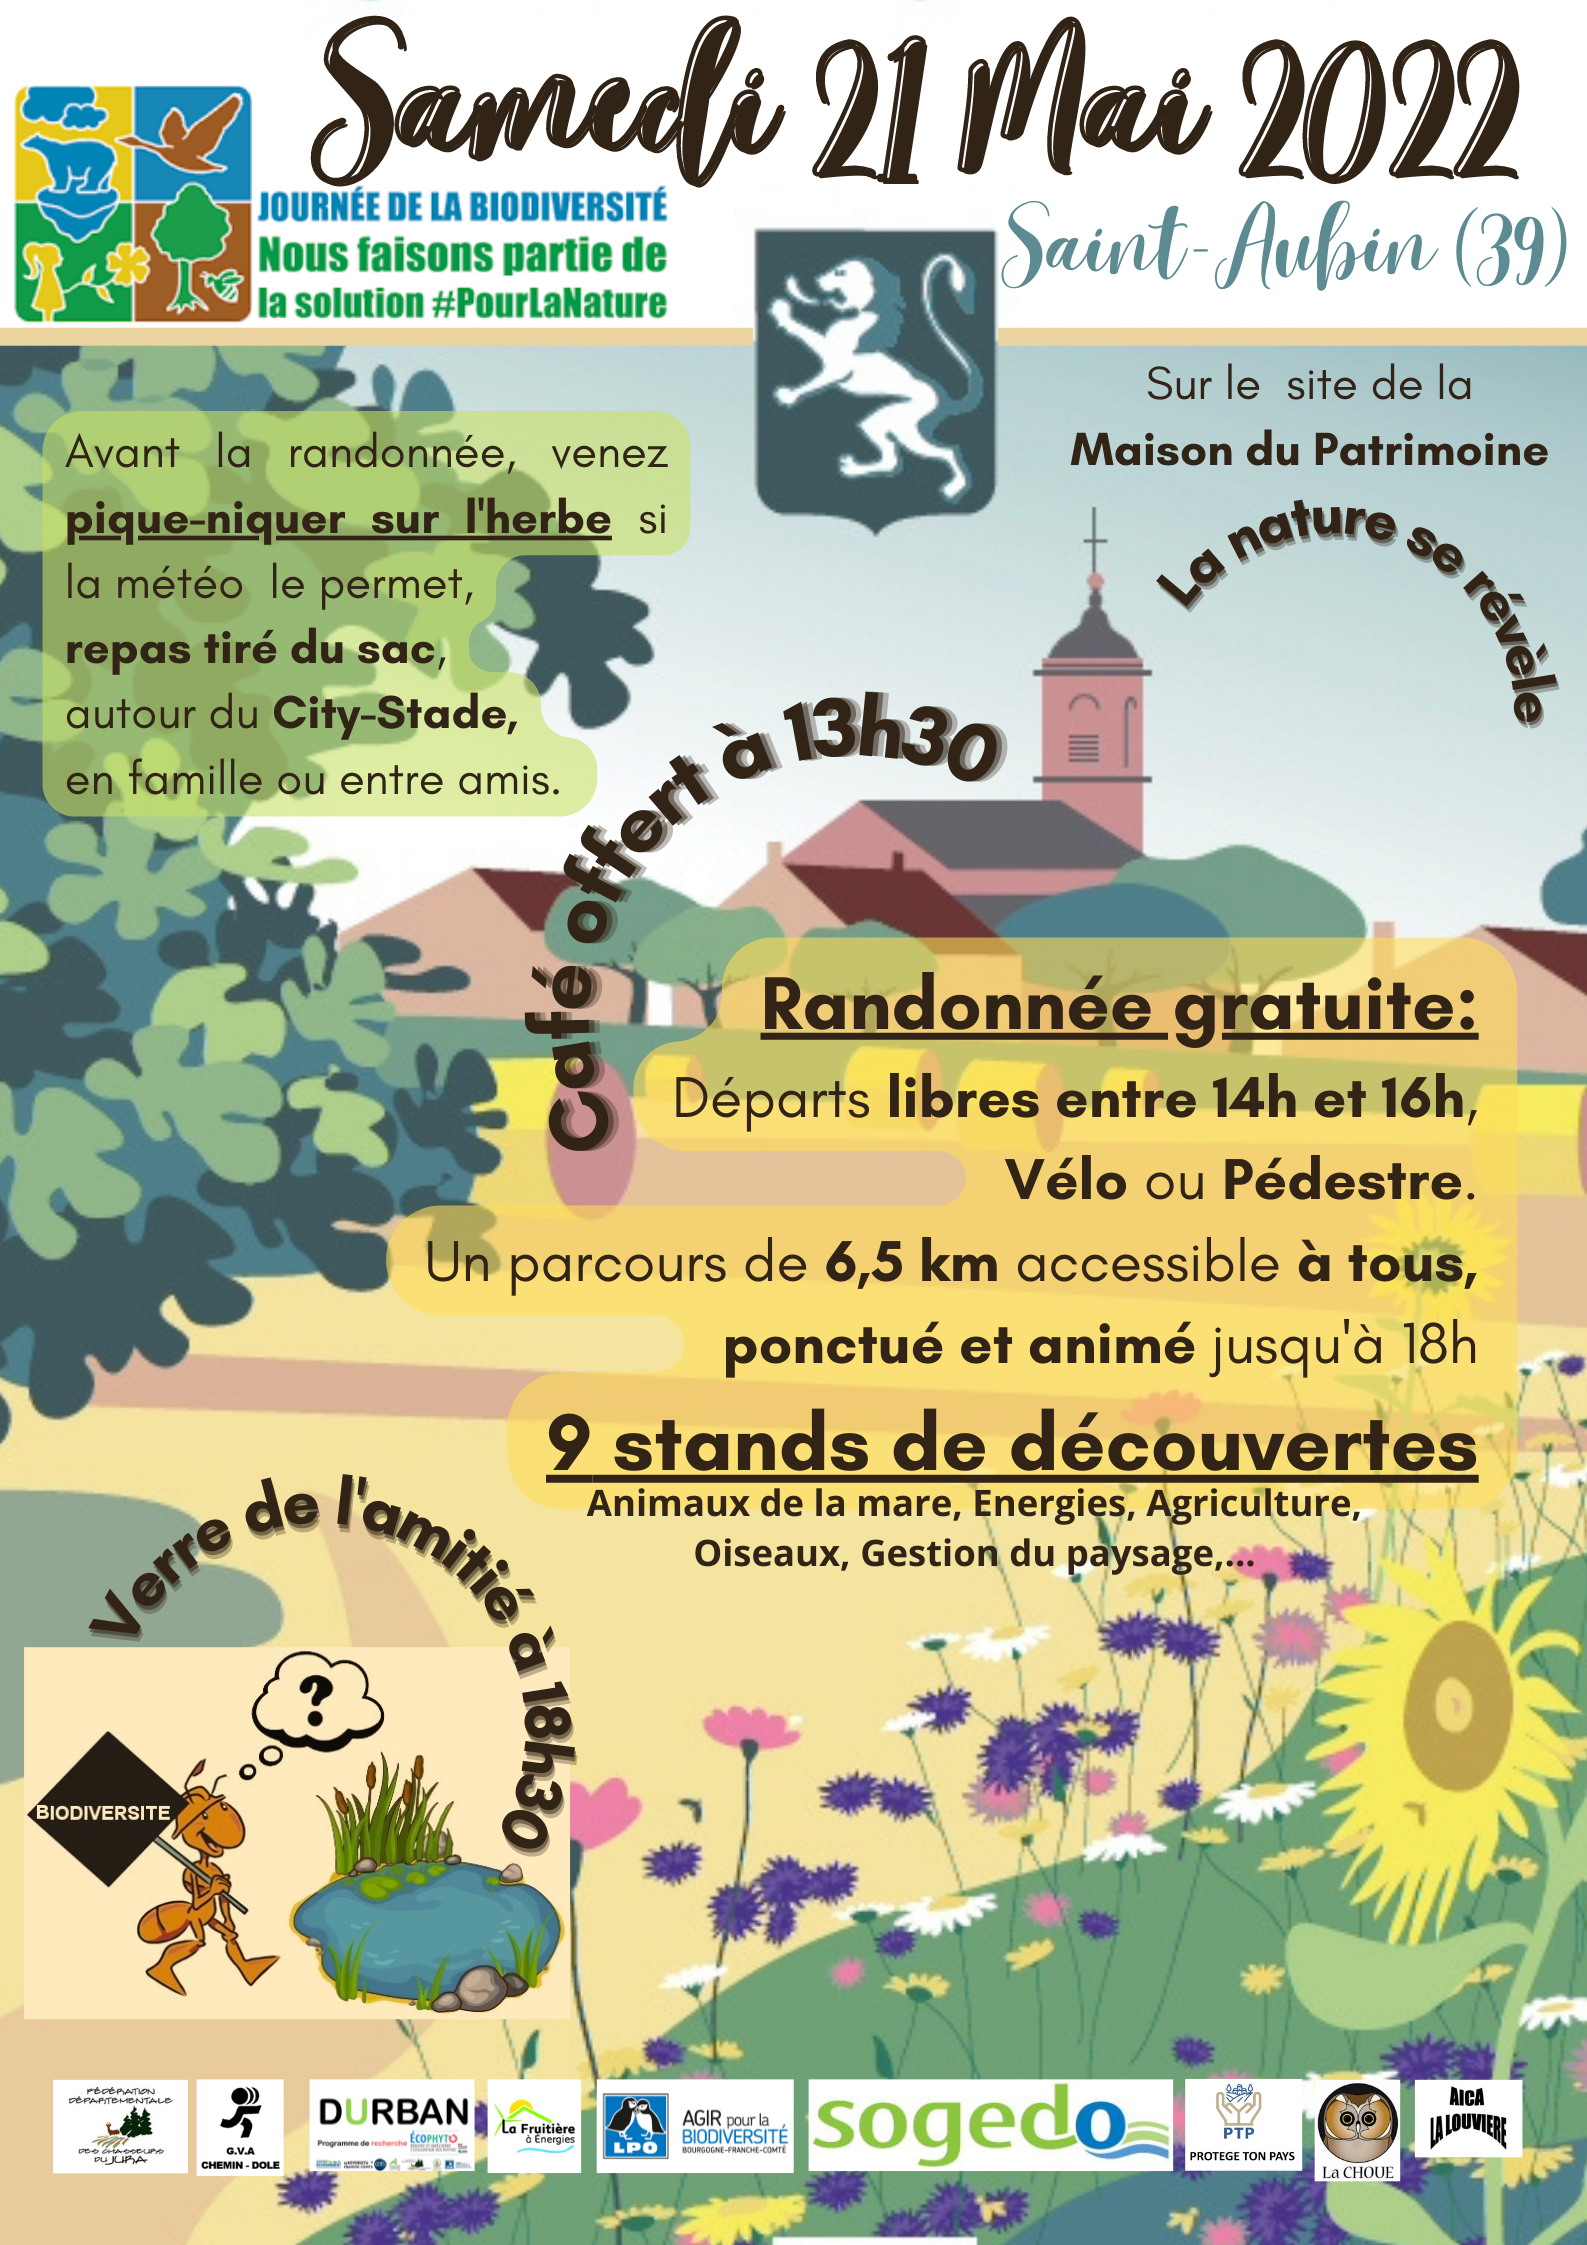 Agenda : Saint-Aubin (Jura) : 21 mai 2022 : journée de la biodiversité